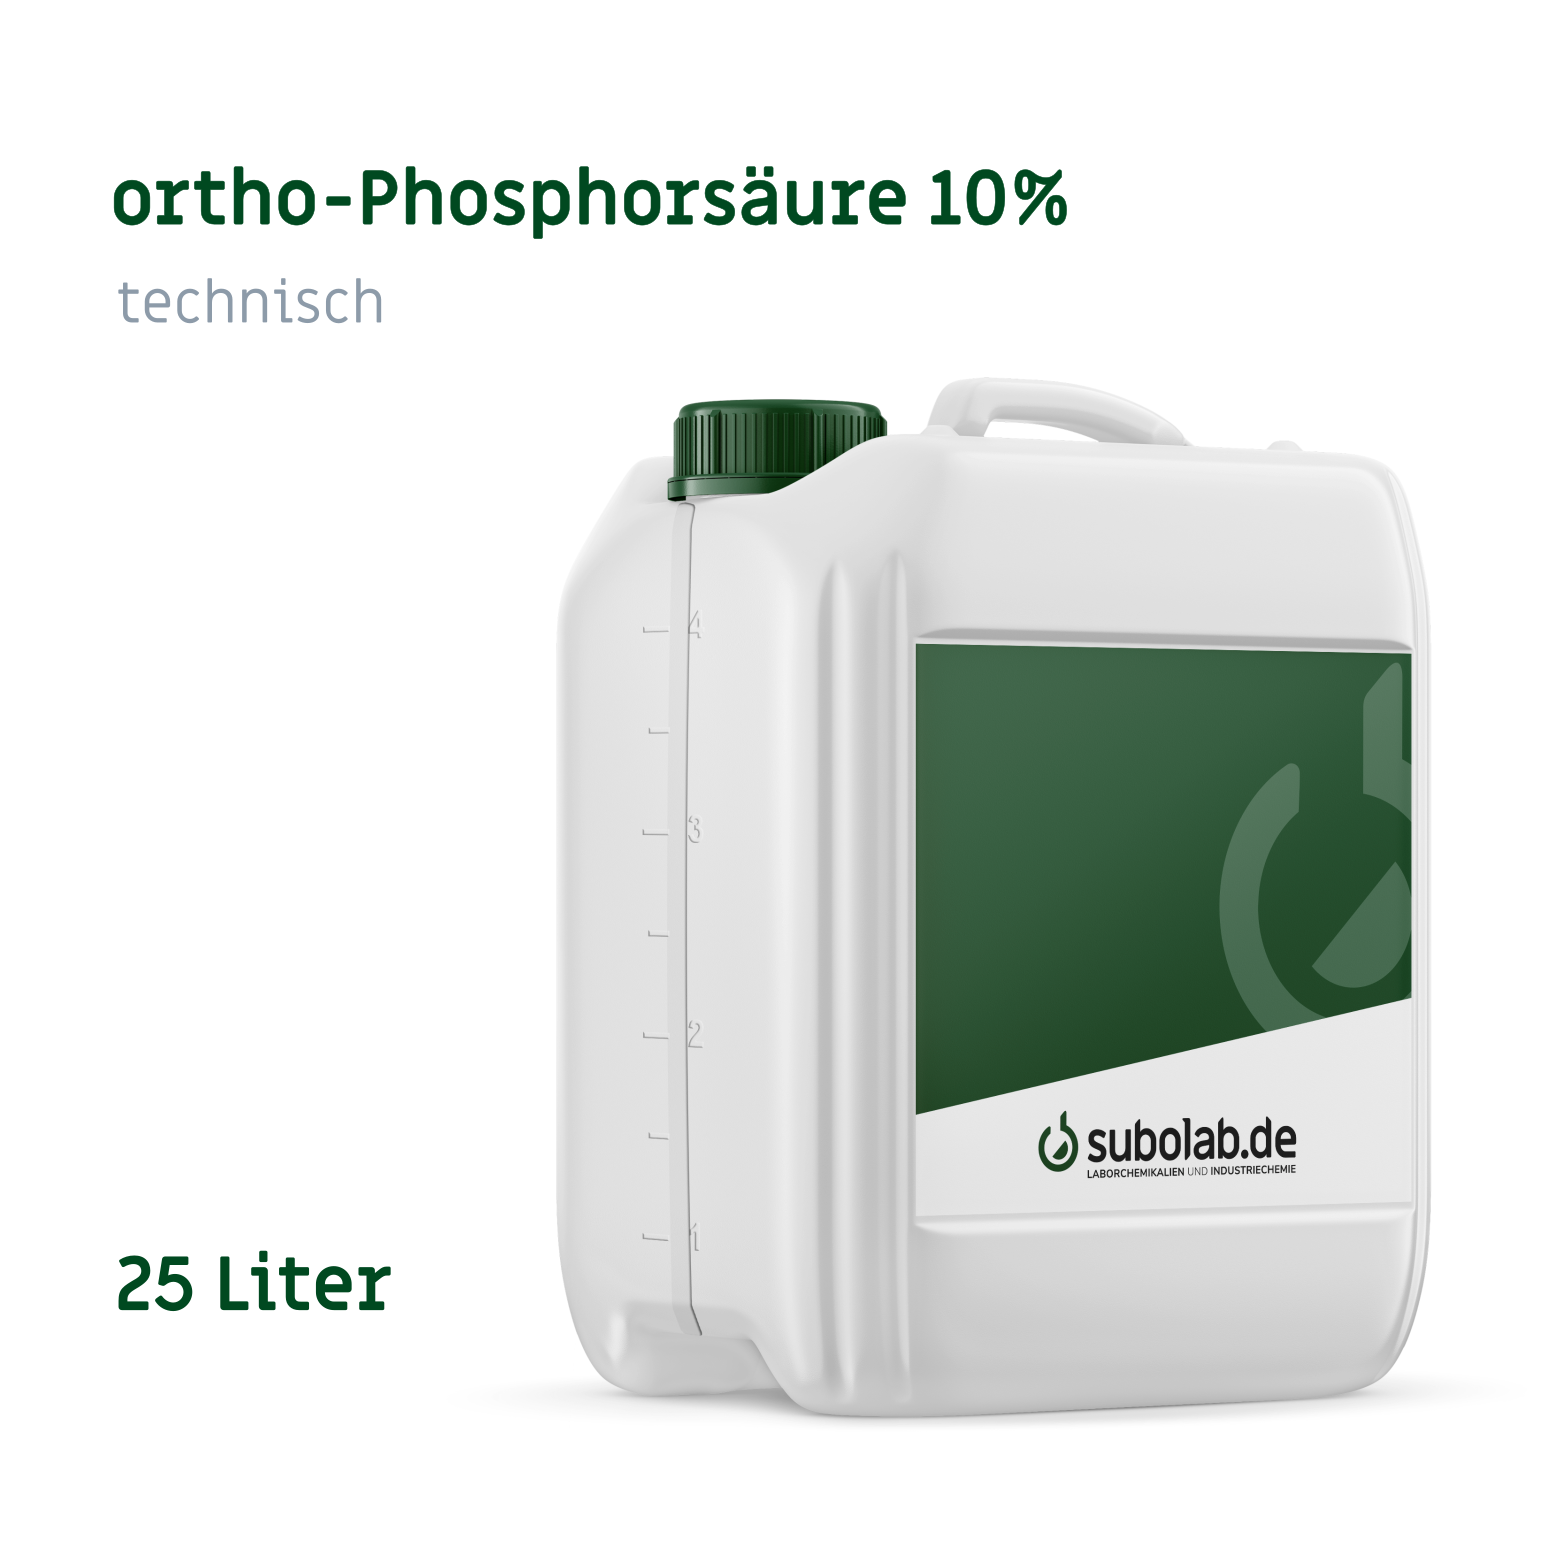 Bild von ortho-Phosphorsäure 10% technisch (25 Liter)